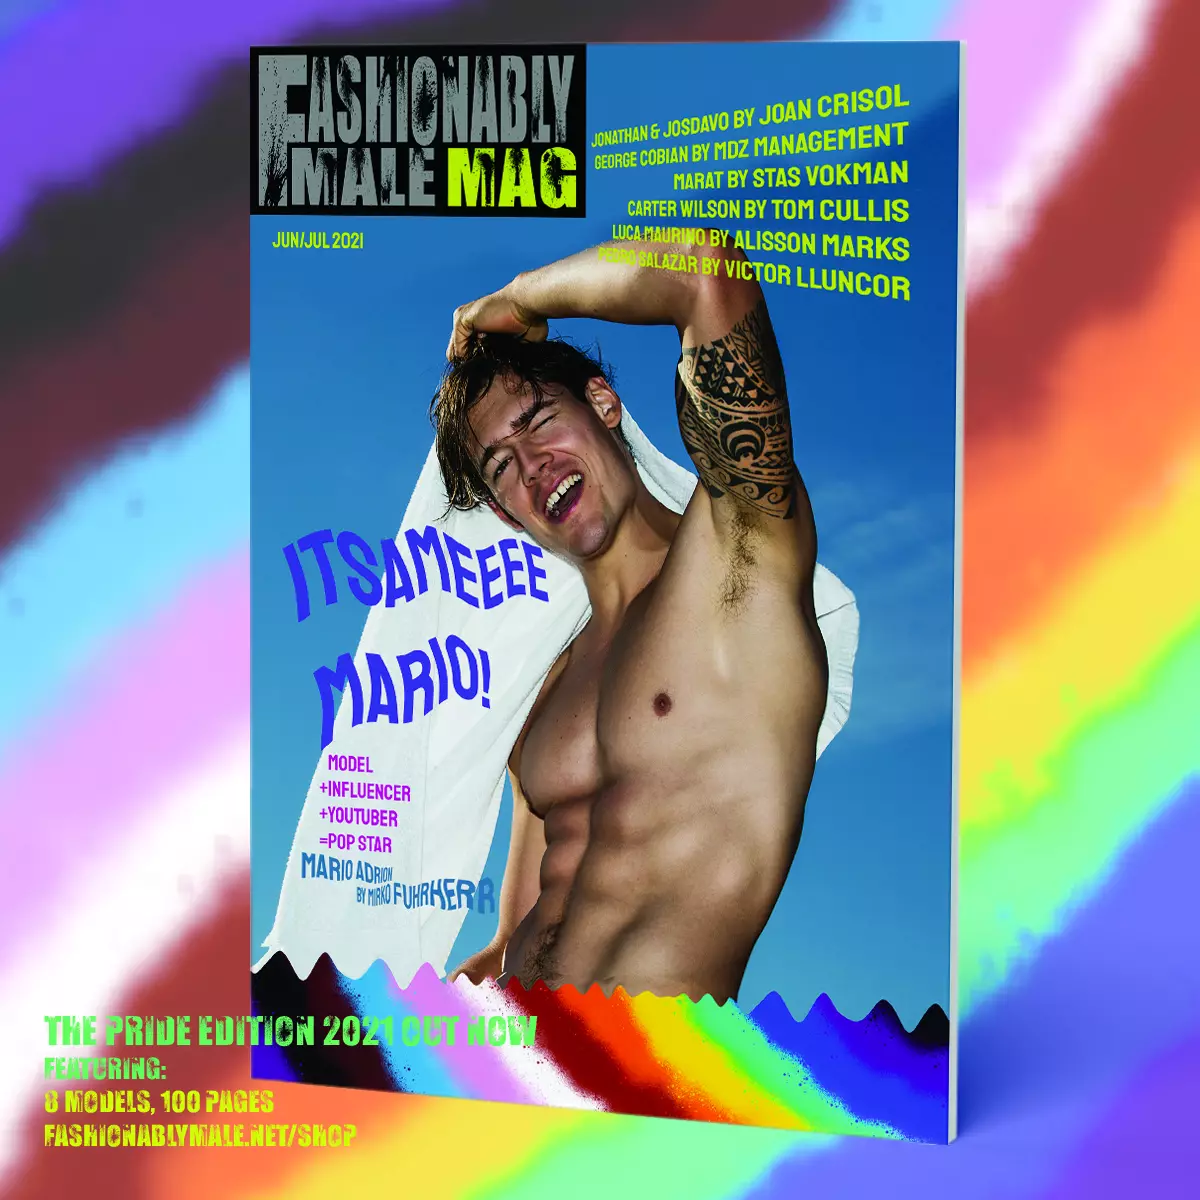 Mario Adrion a Fashionably Male Mag Pride Edition 2021-es borítótermékéhez